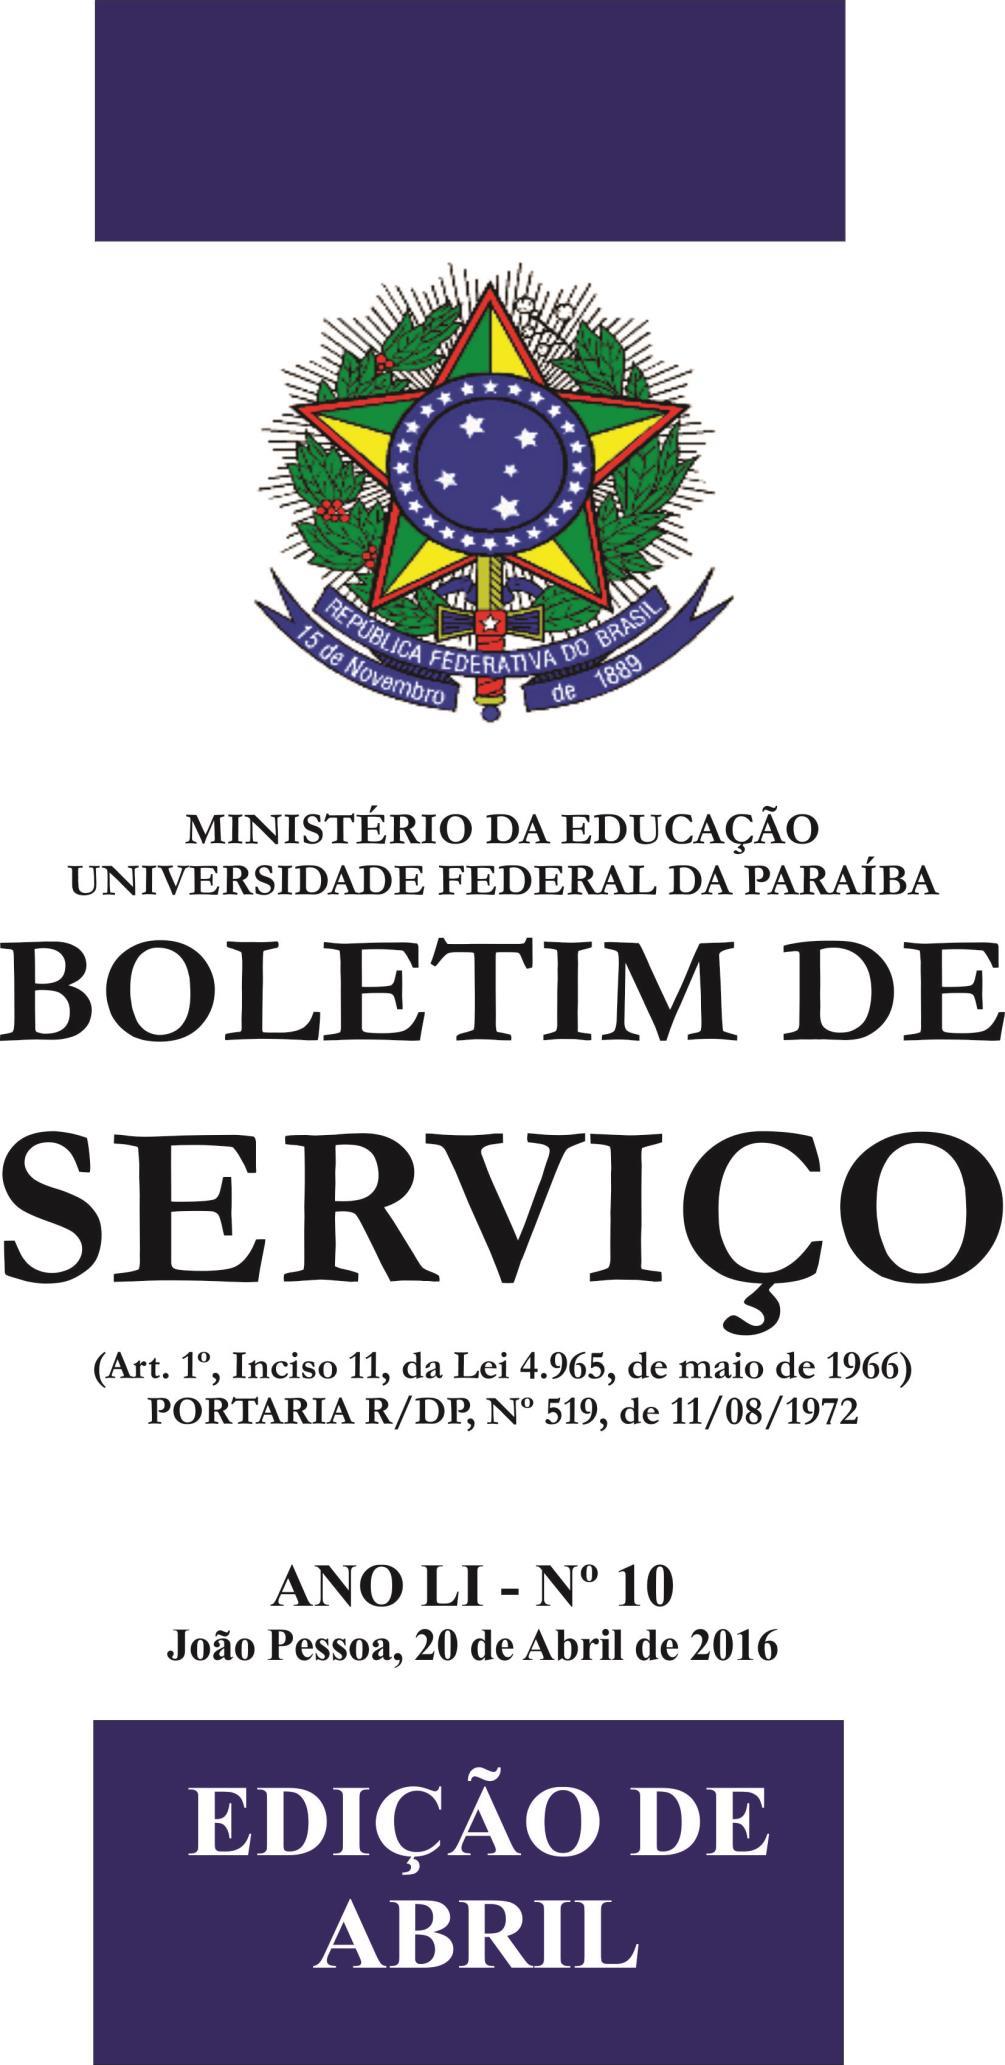 08/08/2018 BOLETIM DE SERVIÇO - Nº 35 PÁGINA 1 ANO LIII